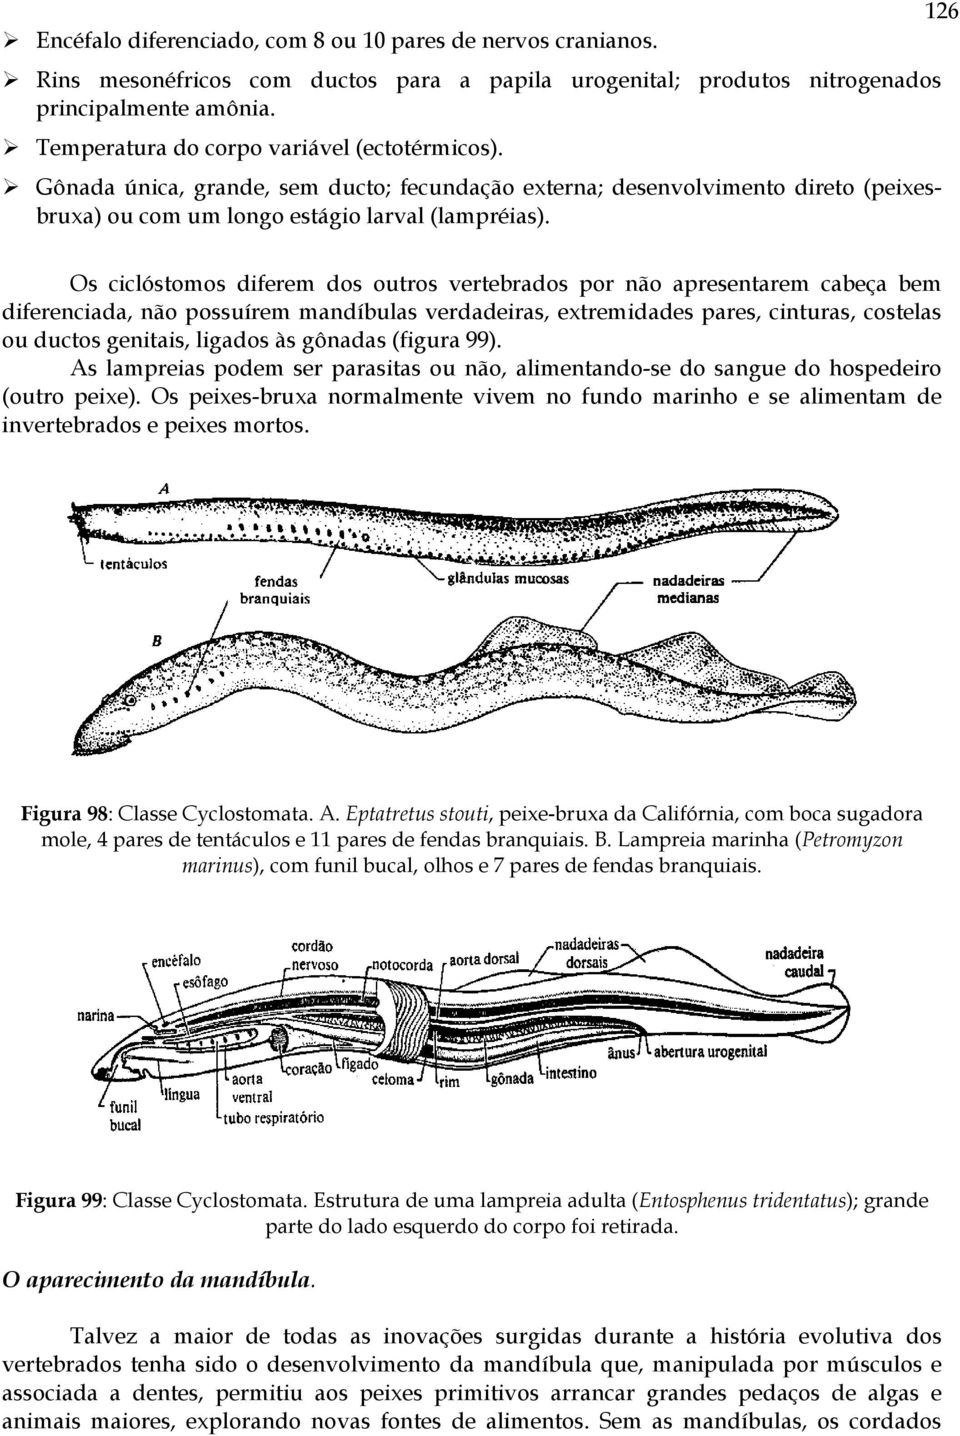 126 Os ciclóstomos diferem dos outros vertebrados por não apresentarem cabeça bem diferenciada, não possuírem mandíbulas verdadeiras, extremidades pares, cinturas, costelas ou ductos genitais,